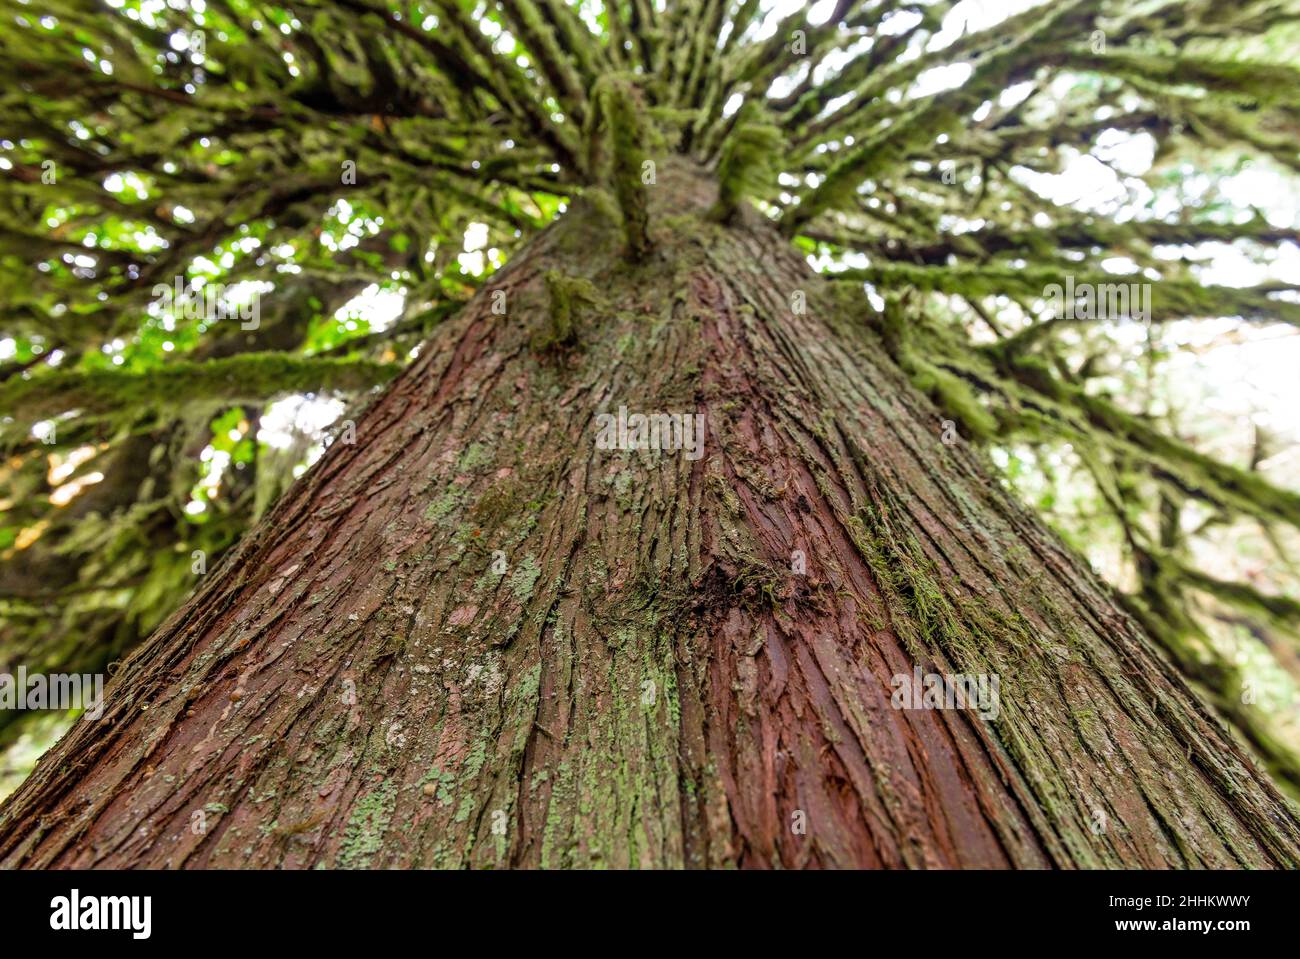 Cèdre rouge dans la forêt tropicale, parc provincial MacMillan, île de Vancouver, Canada.Mise au point sur le premier plan. Banque D'Images